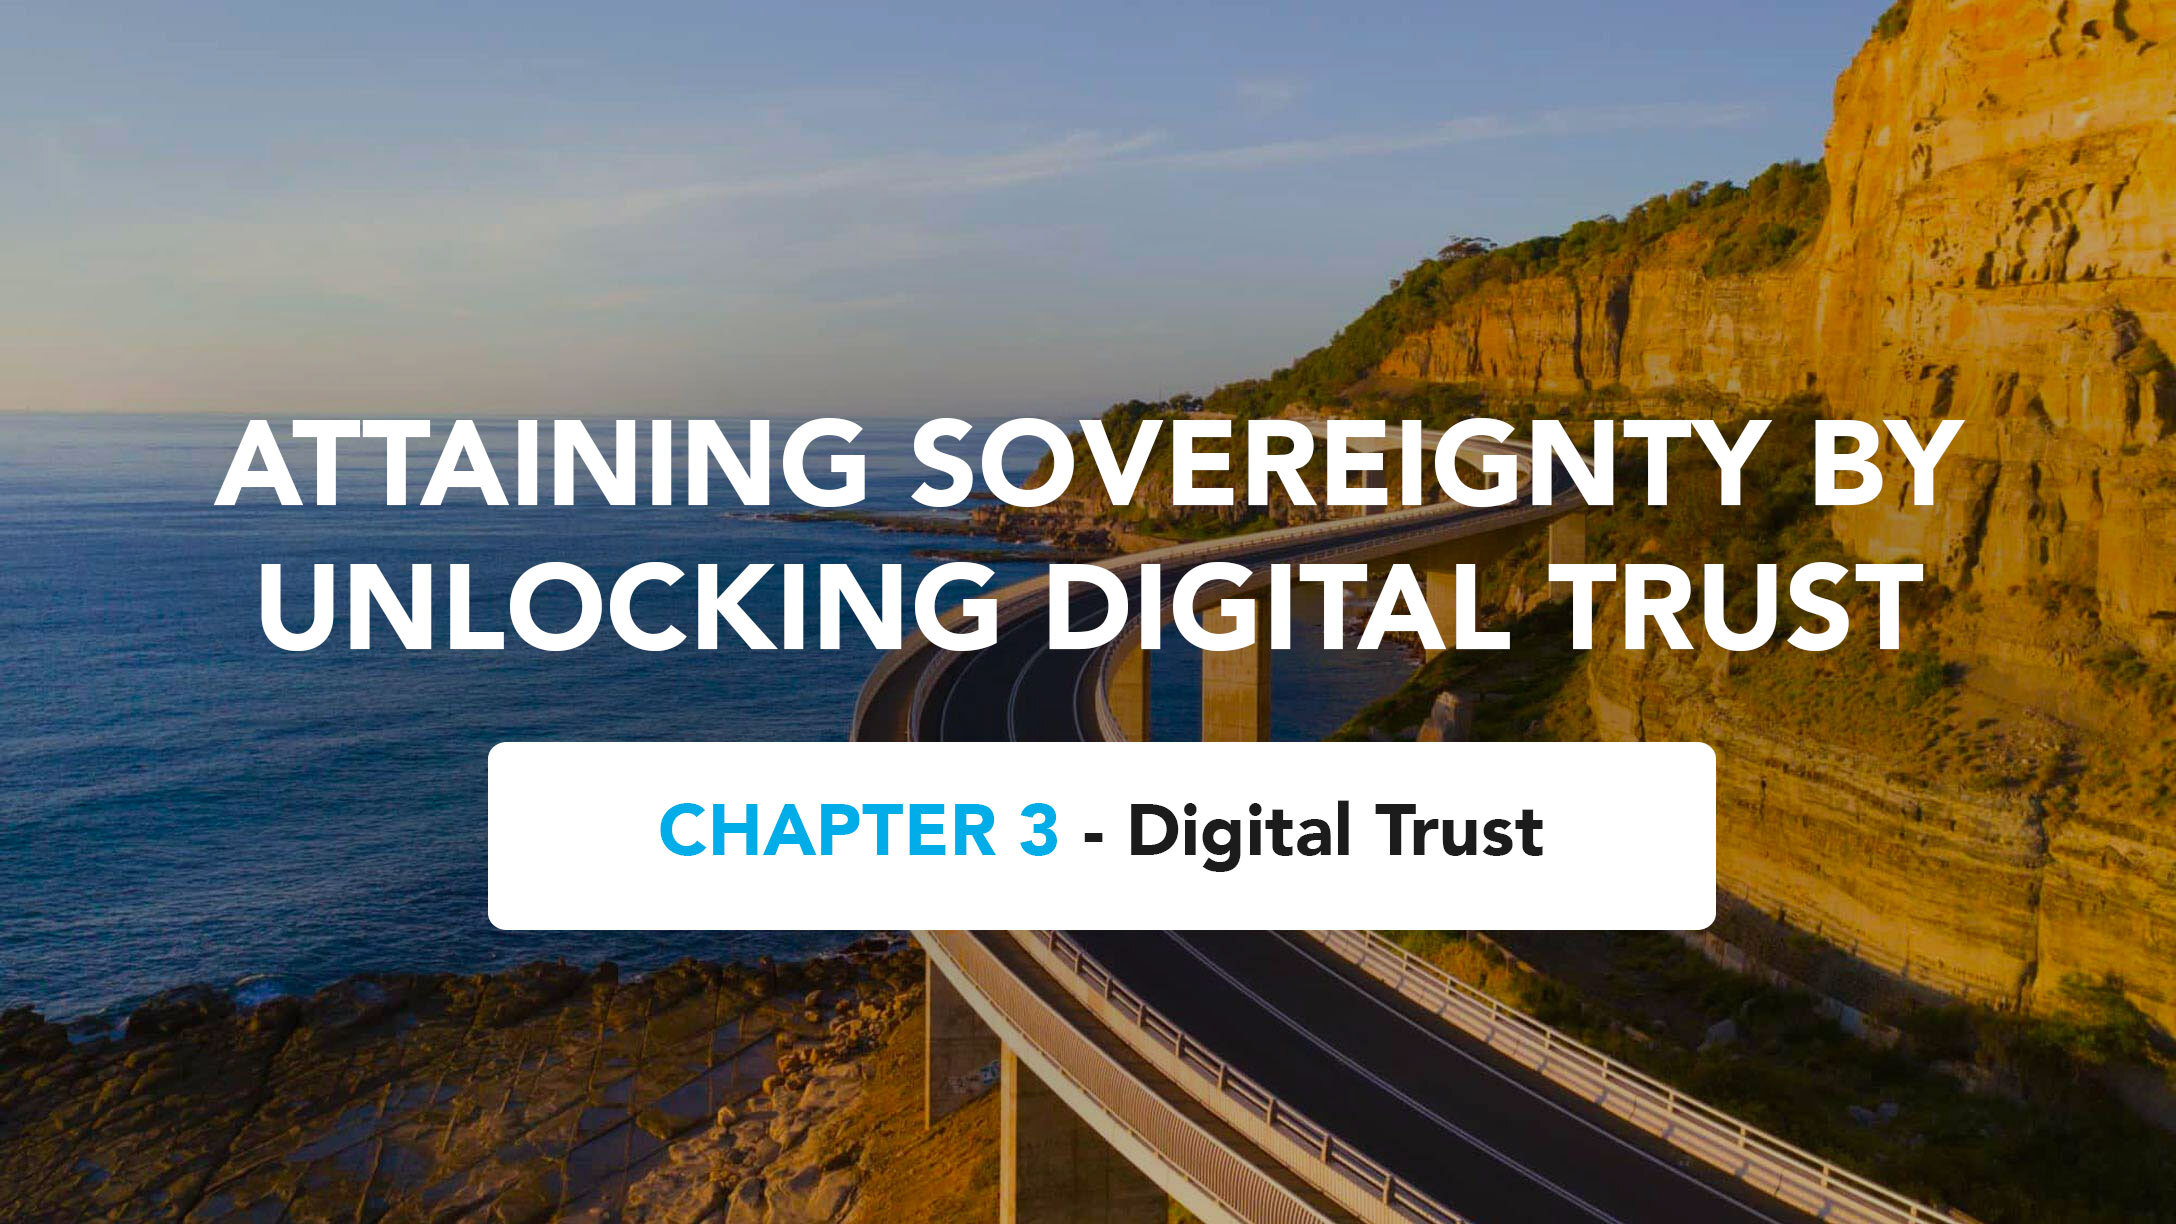 Chapter 3 – Digital Trust (from Attaining Sovereignty by Unlocking Digital Trust)